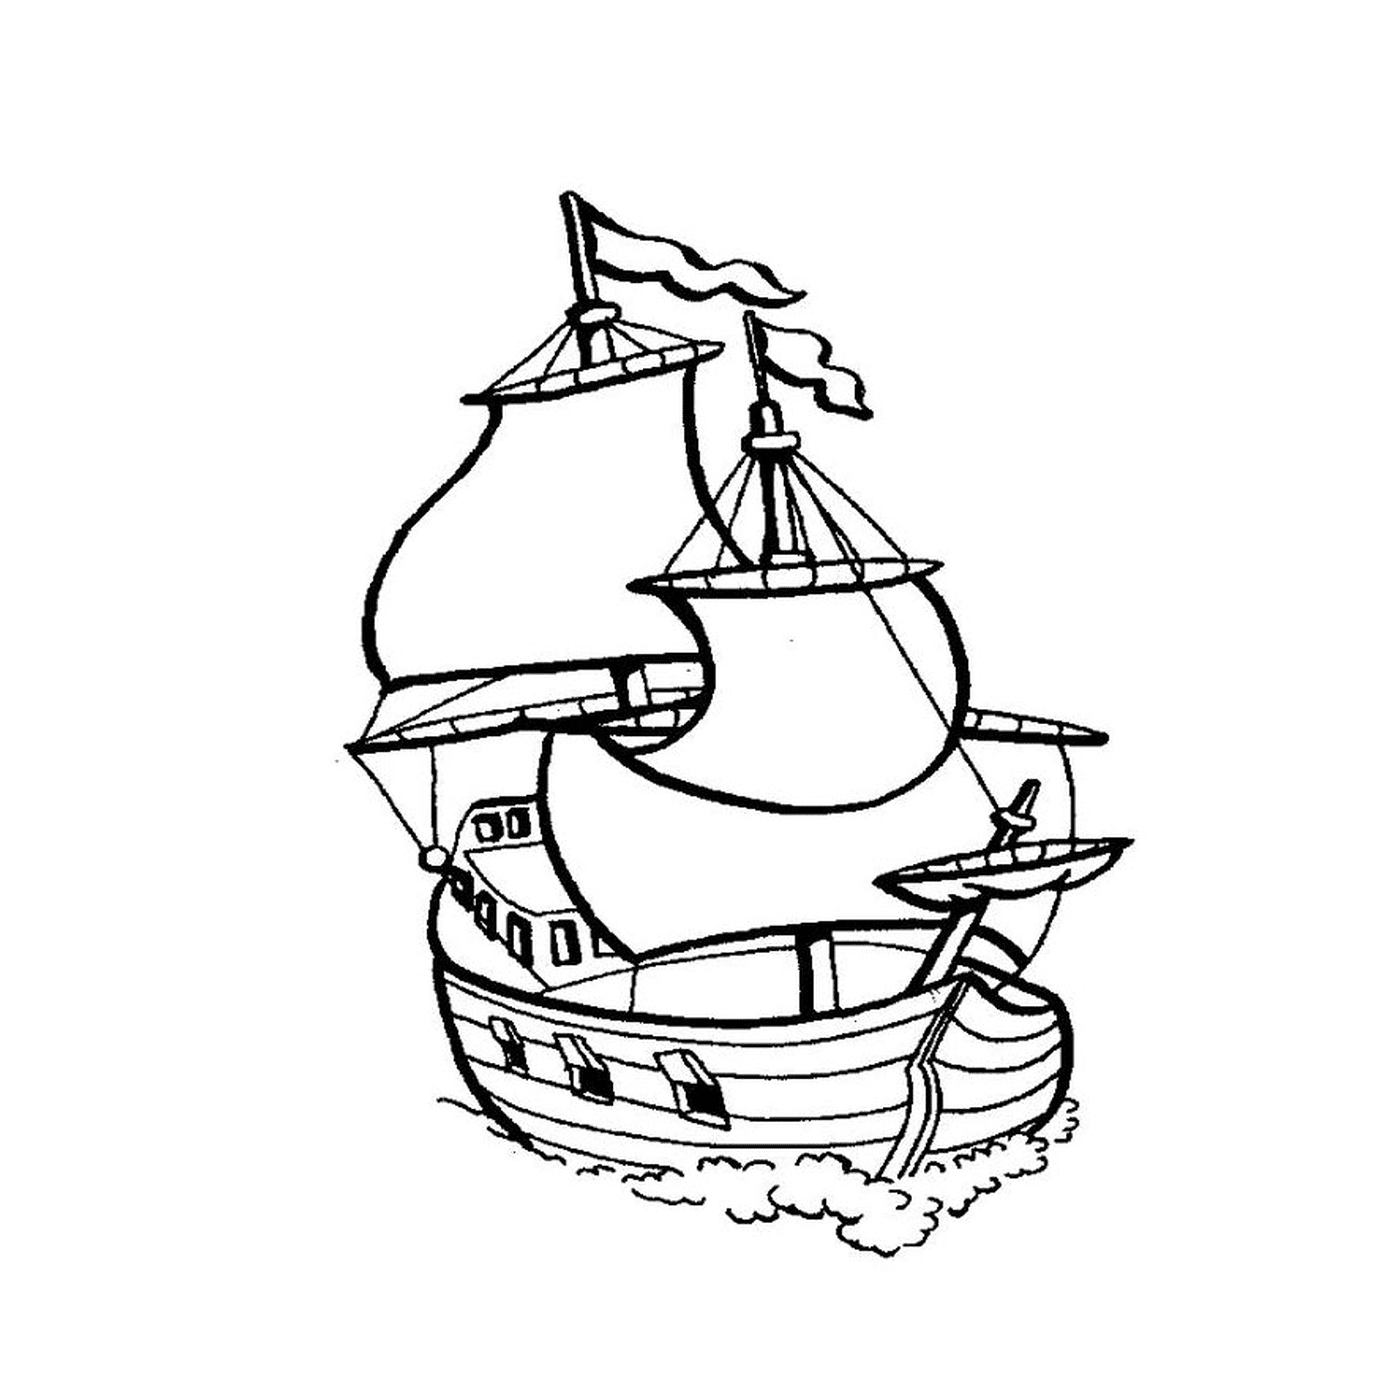  Un viejo velero en el agua 